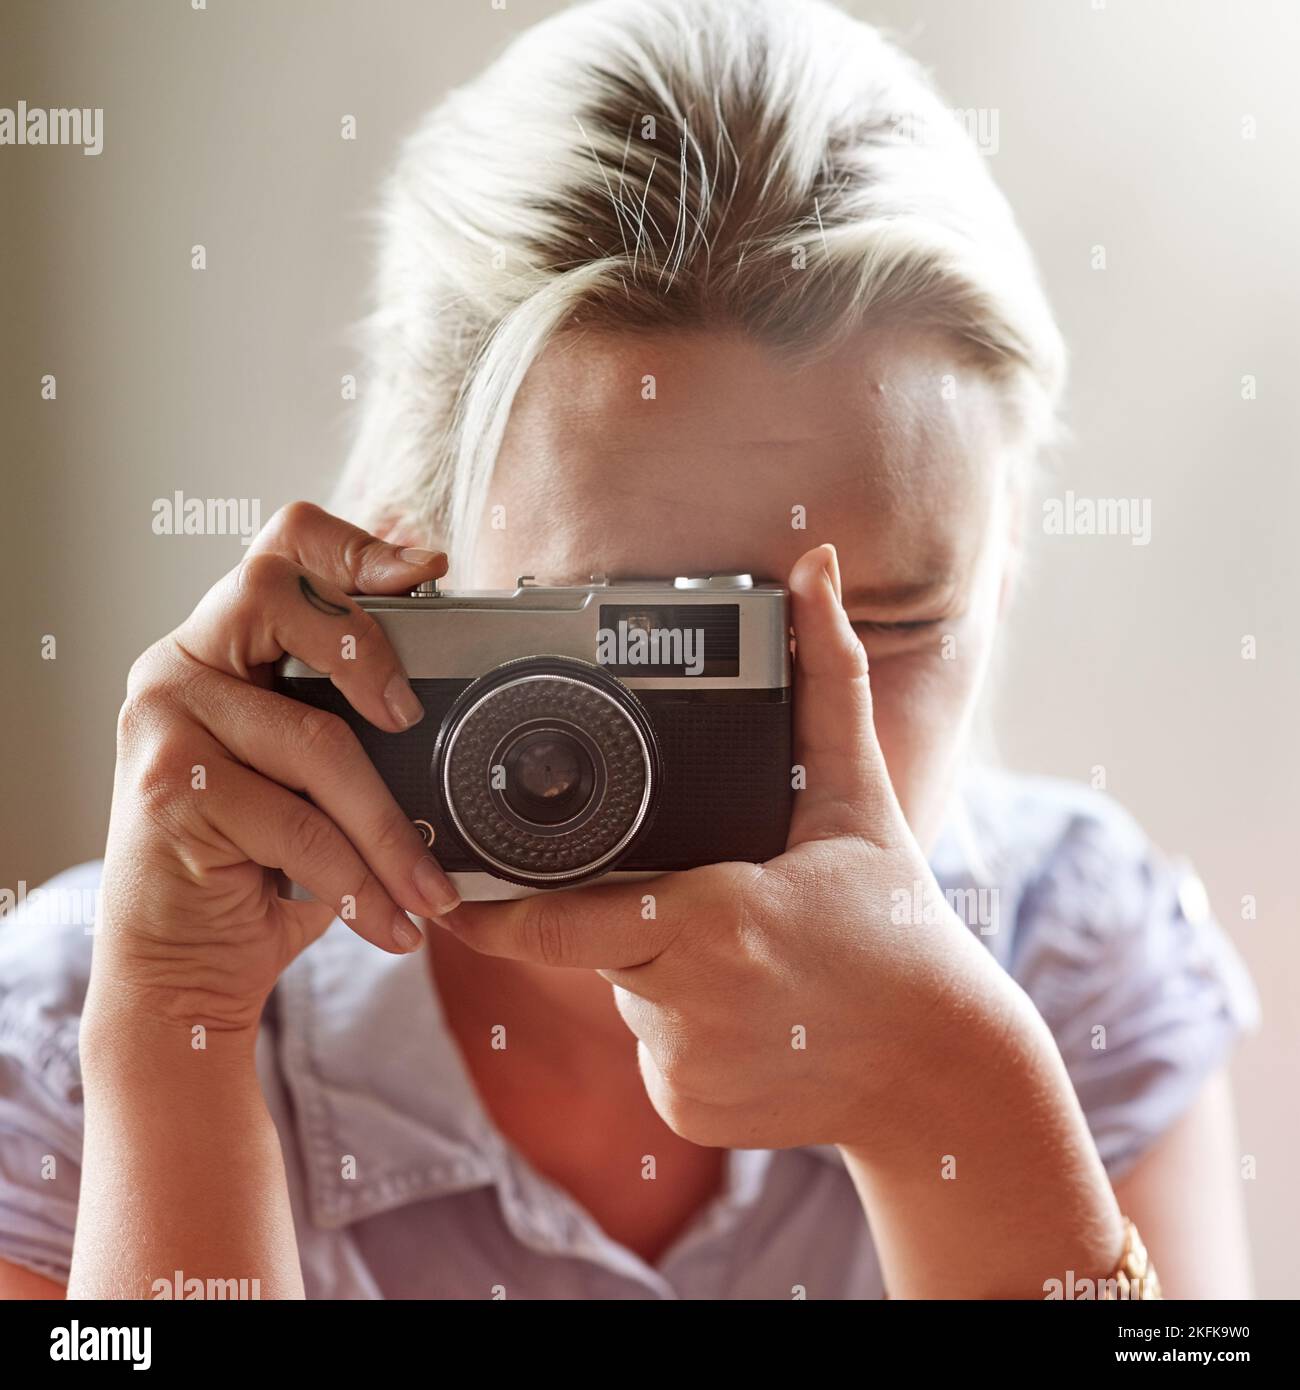 Leben festhalten. Nahaufnahme einer jungen Frau, die mit einer altmodischen Kamera ein Foto gemacht hat. Stockfoto